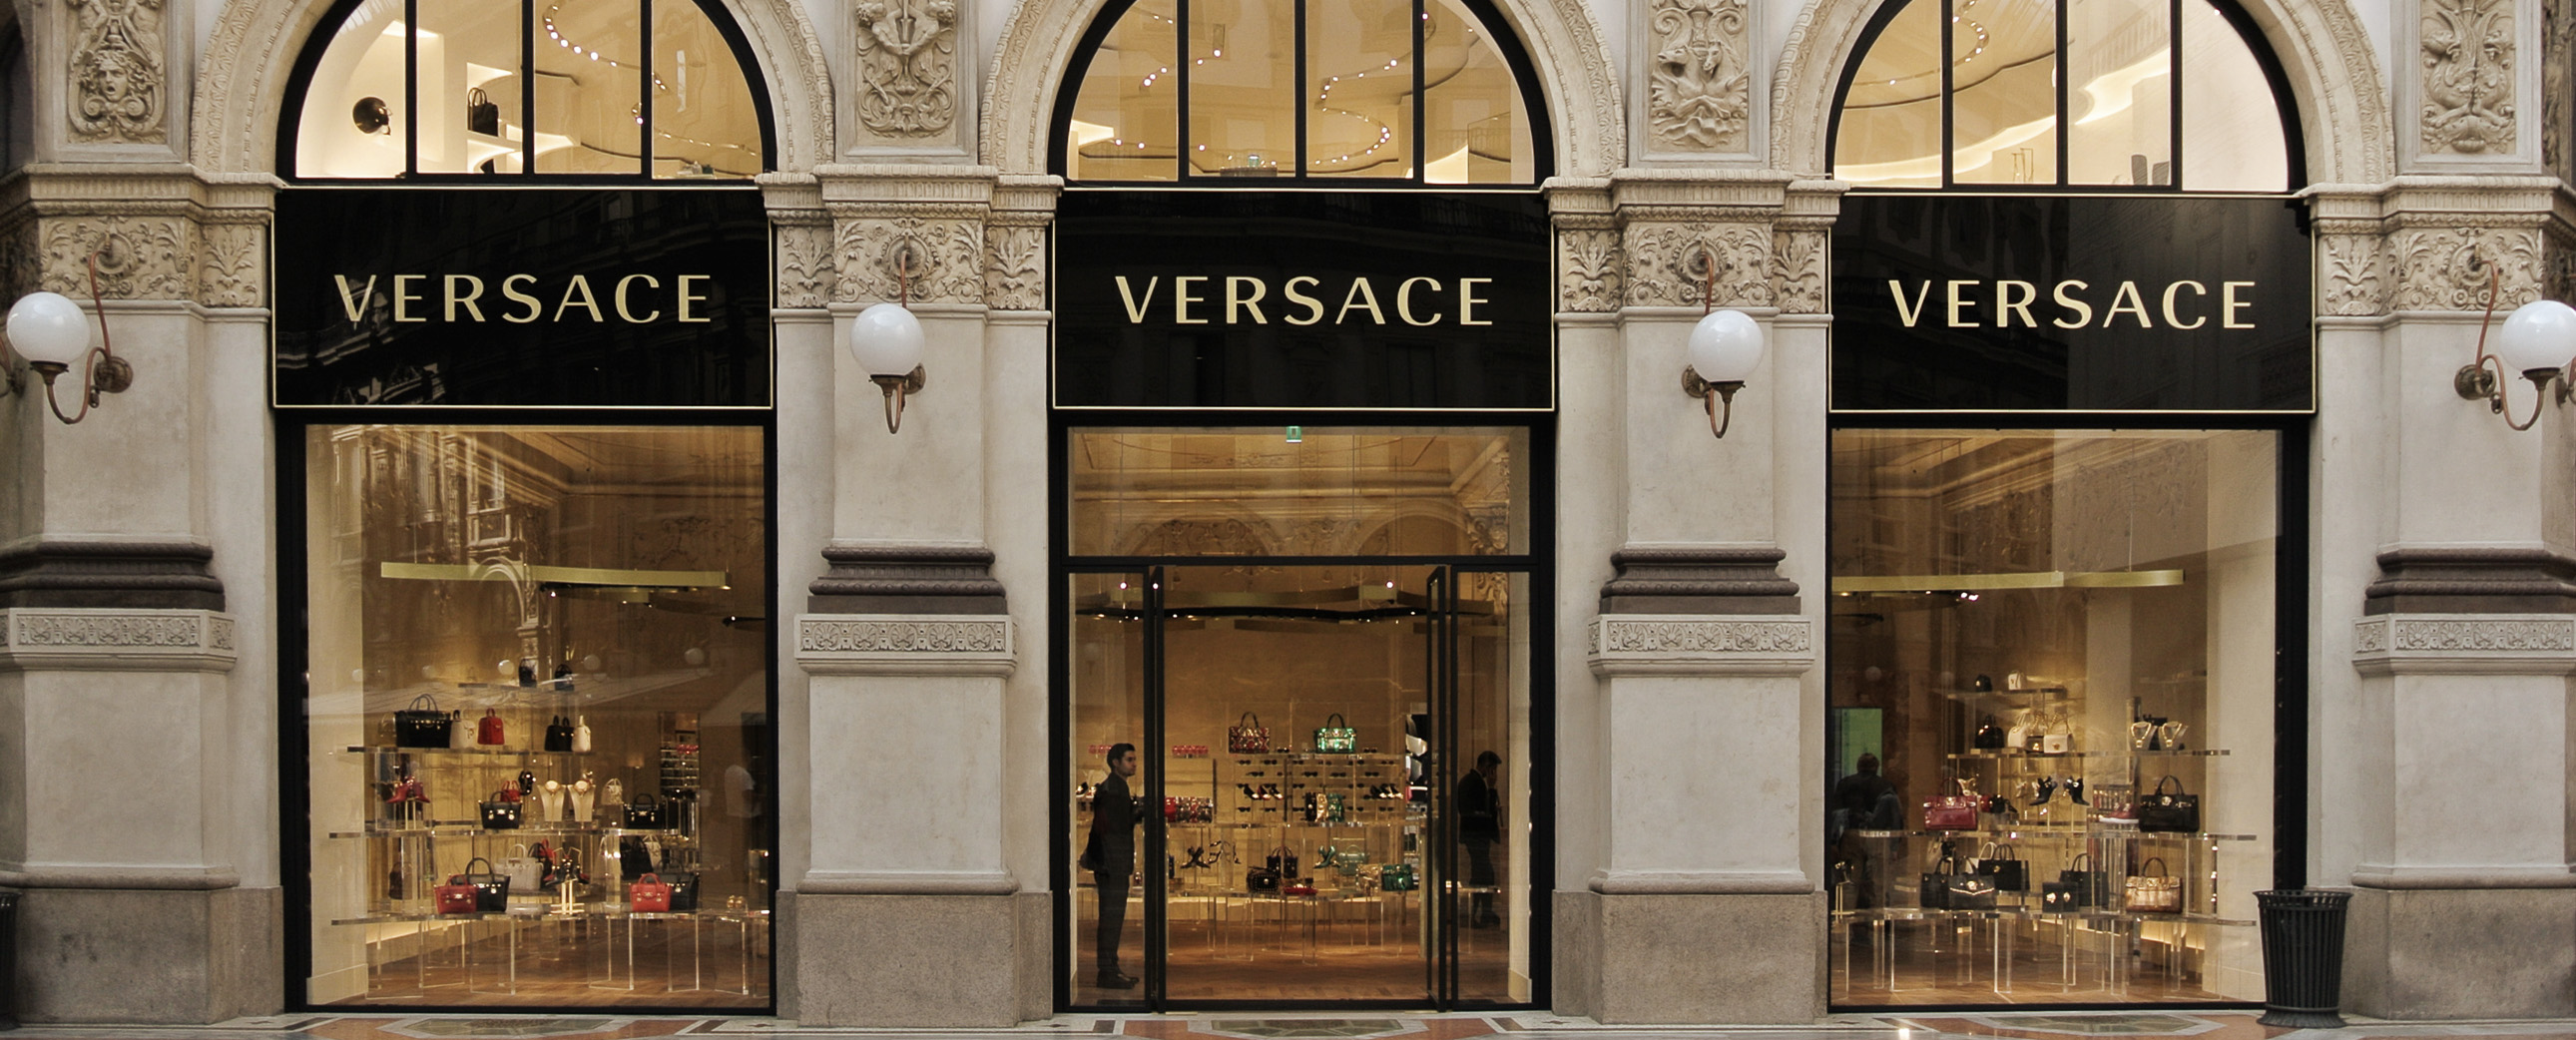 Versace é acusada de utilizar 'código' para se referir a clientes e consumidores negros nas lojas